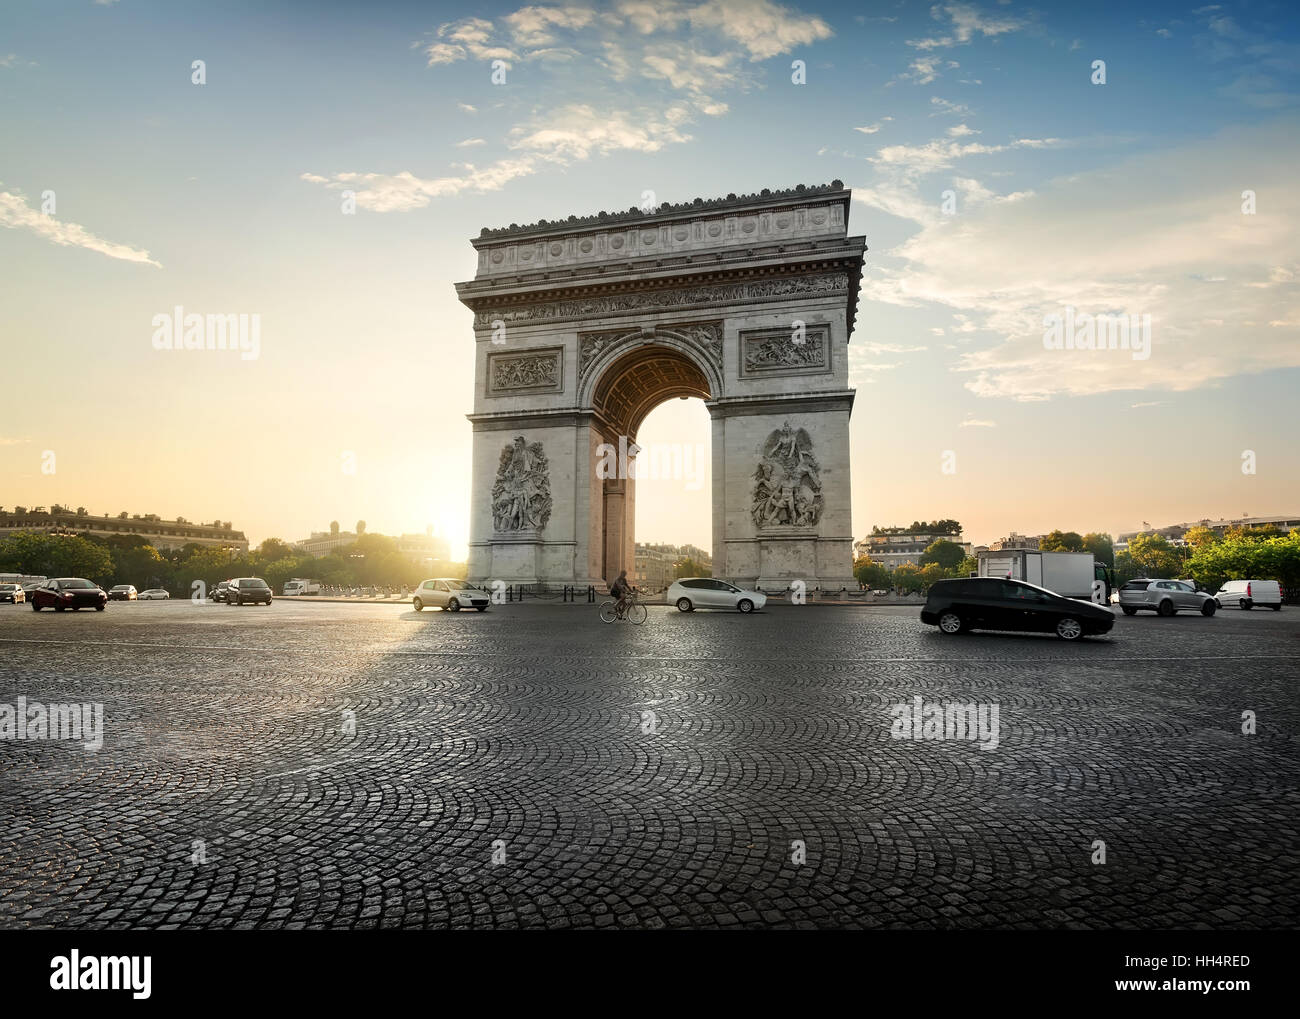 Le trafic sur l'Avenue de la Grande Armée près de l'Arc de Triomphe à Paris, France Banque D'Images